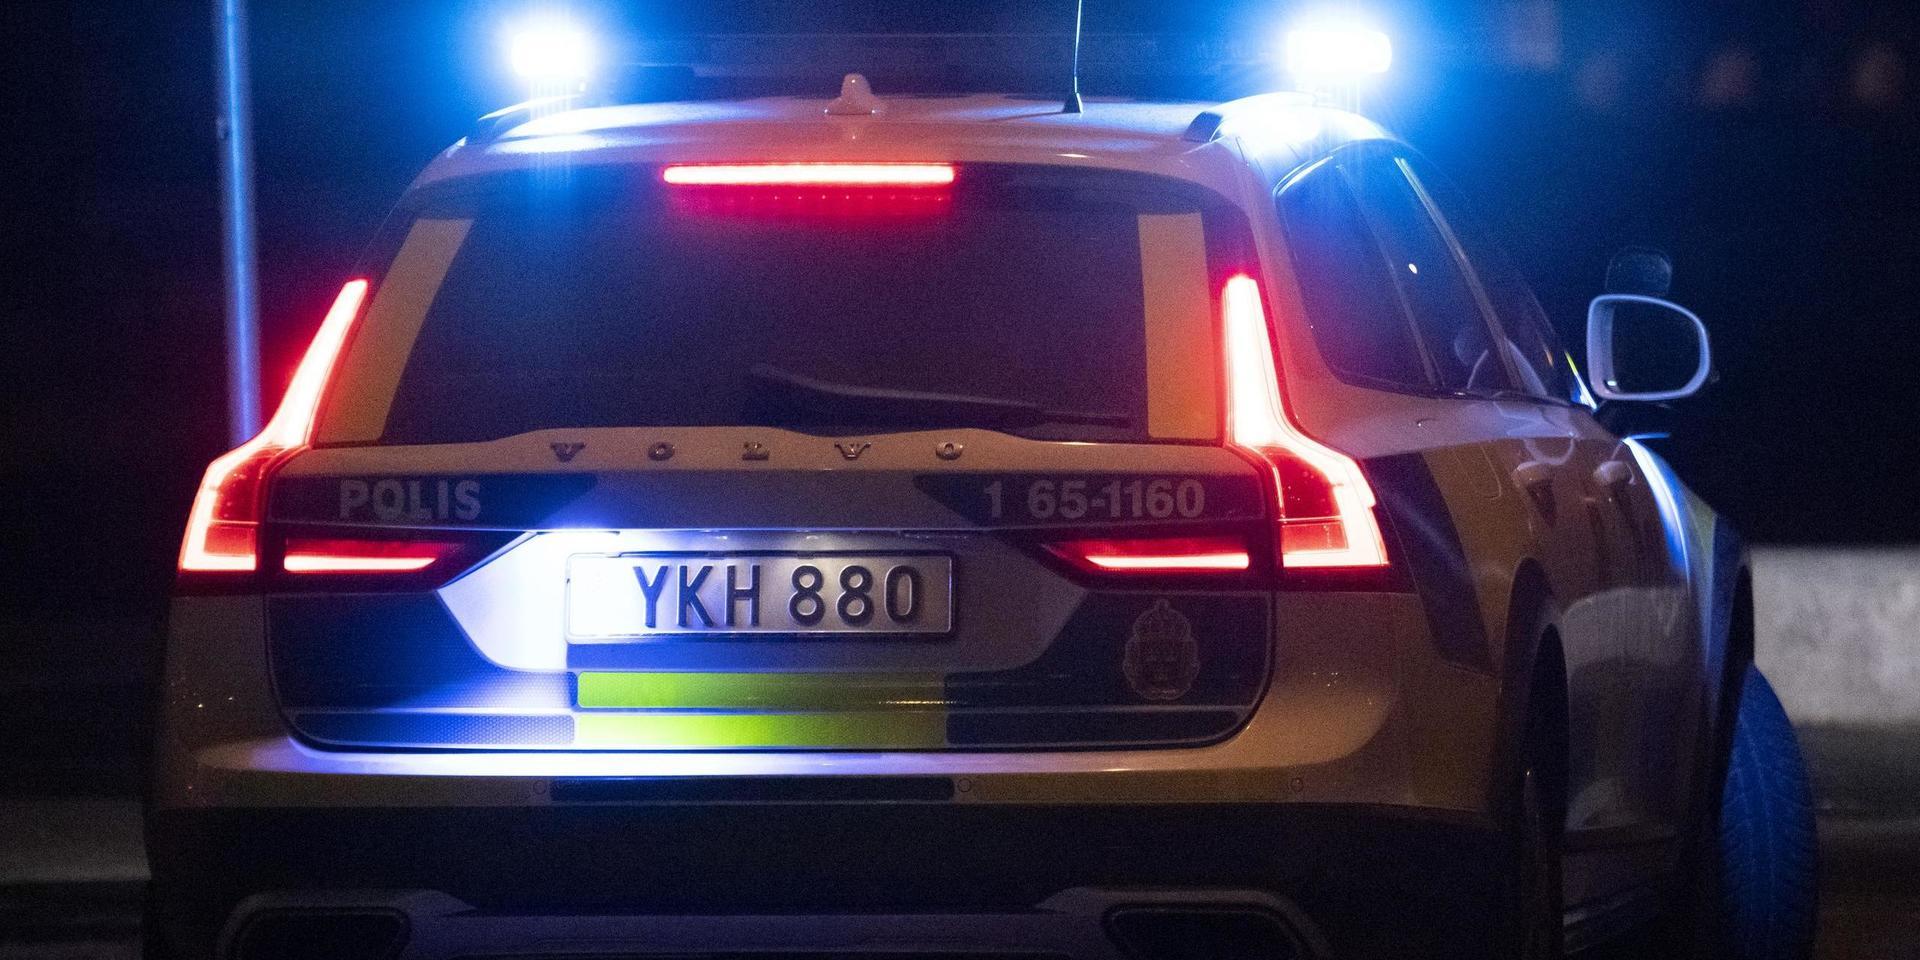 Polisen gjorde stopp och kontroll på en bil i Veinge. Föraren verkade påverkad och hade droger.